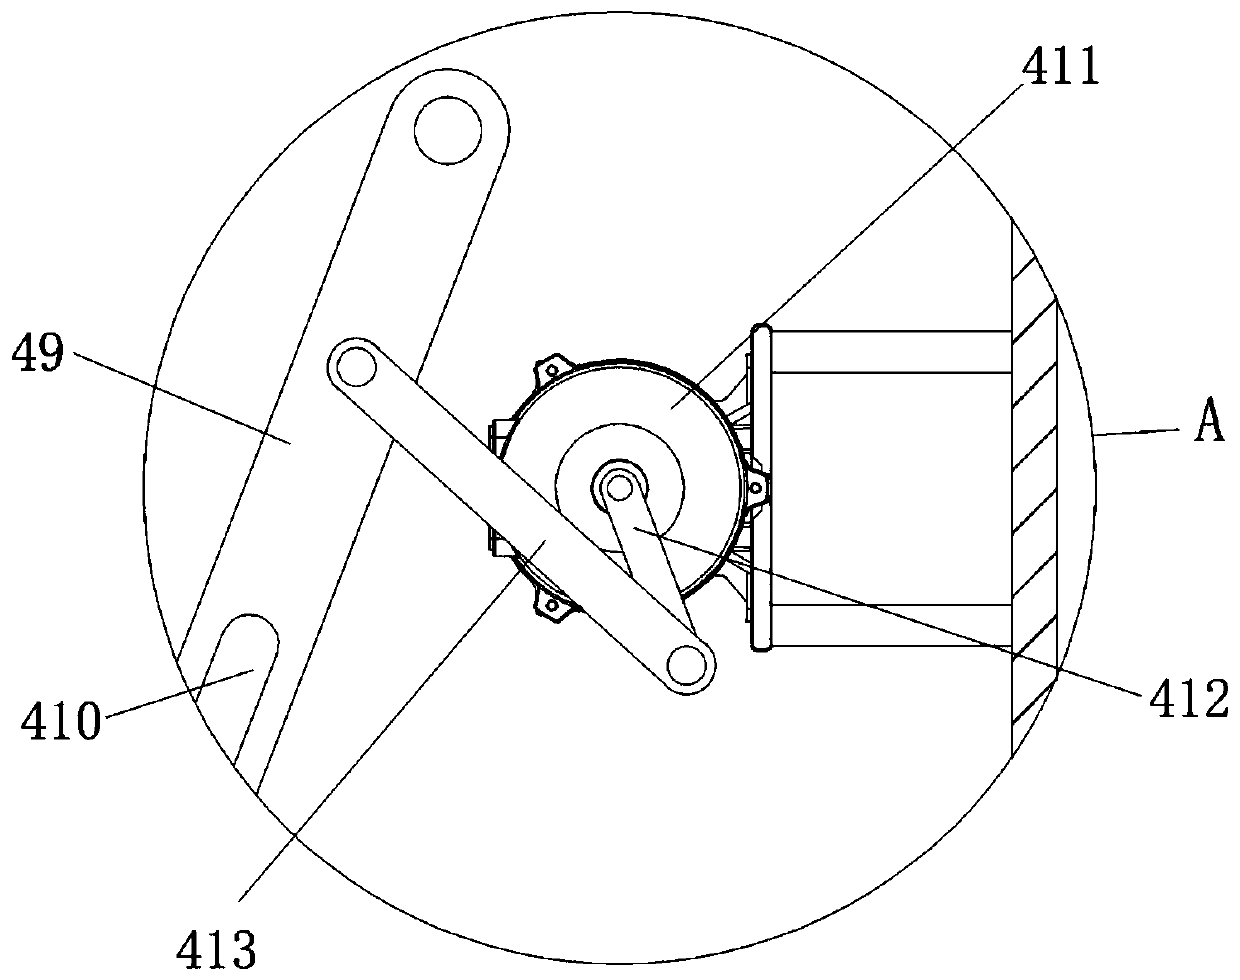 Auxiliary feeding device of forging hydraulic press